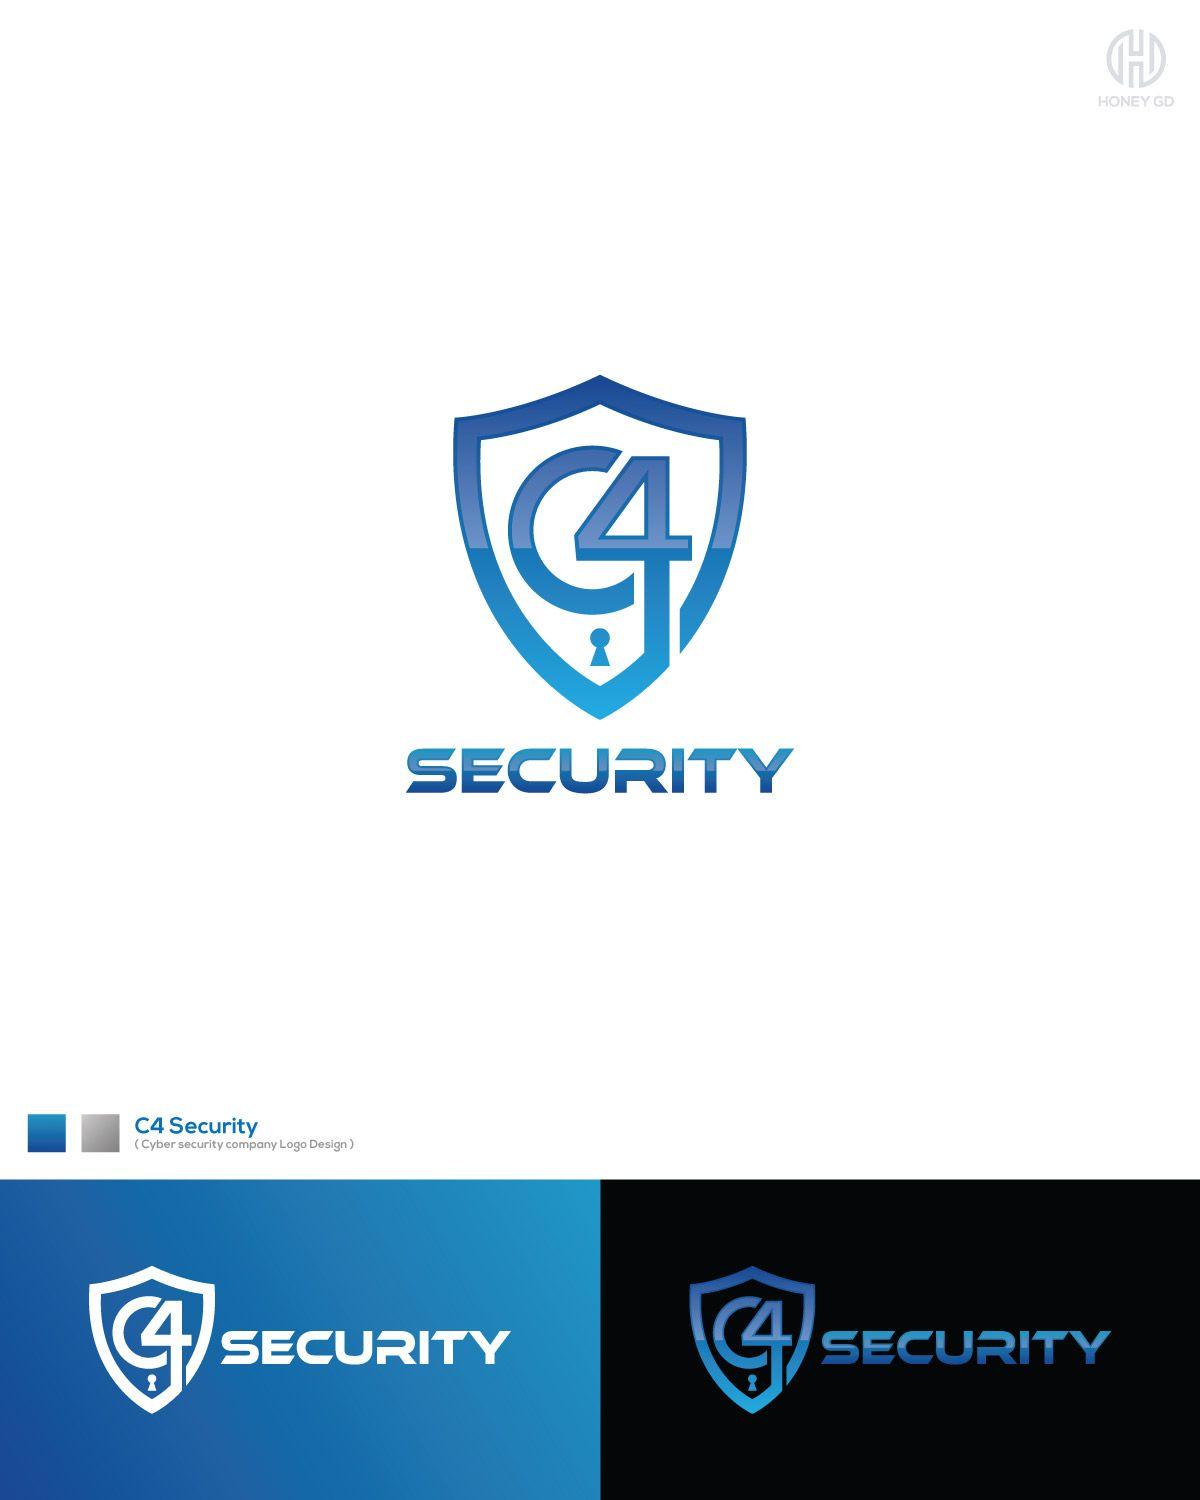 Computer Security Logo - Modern, Playful, Computer Security Logo Design for C4 Security